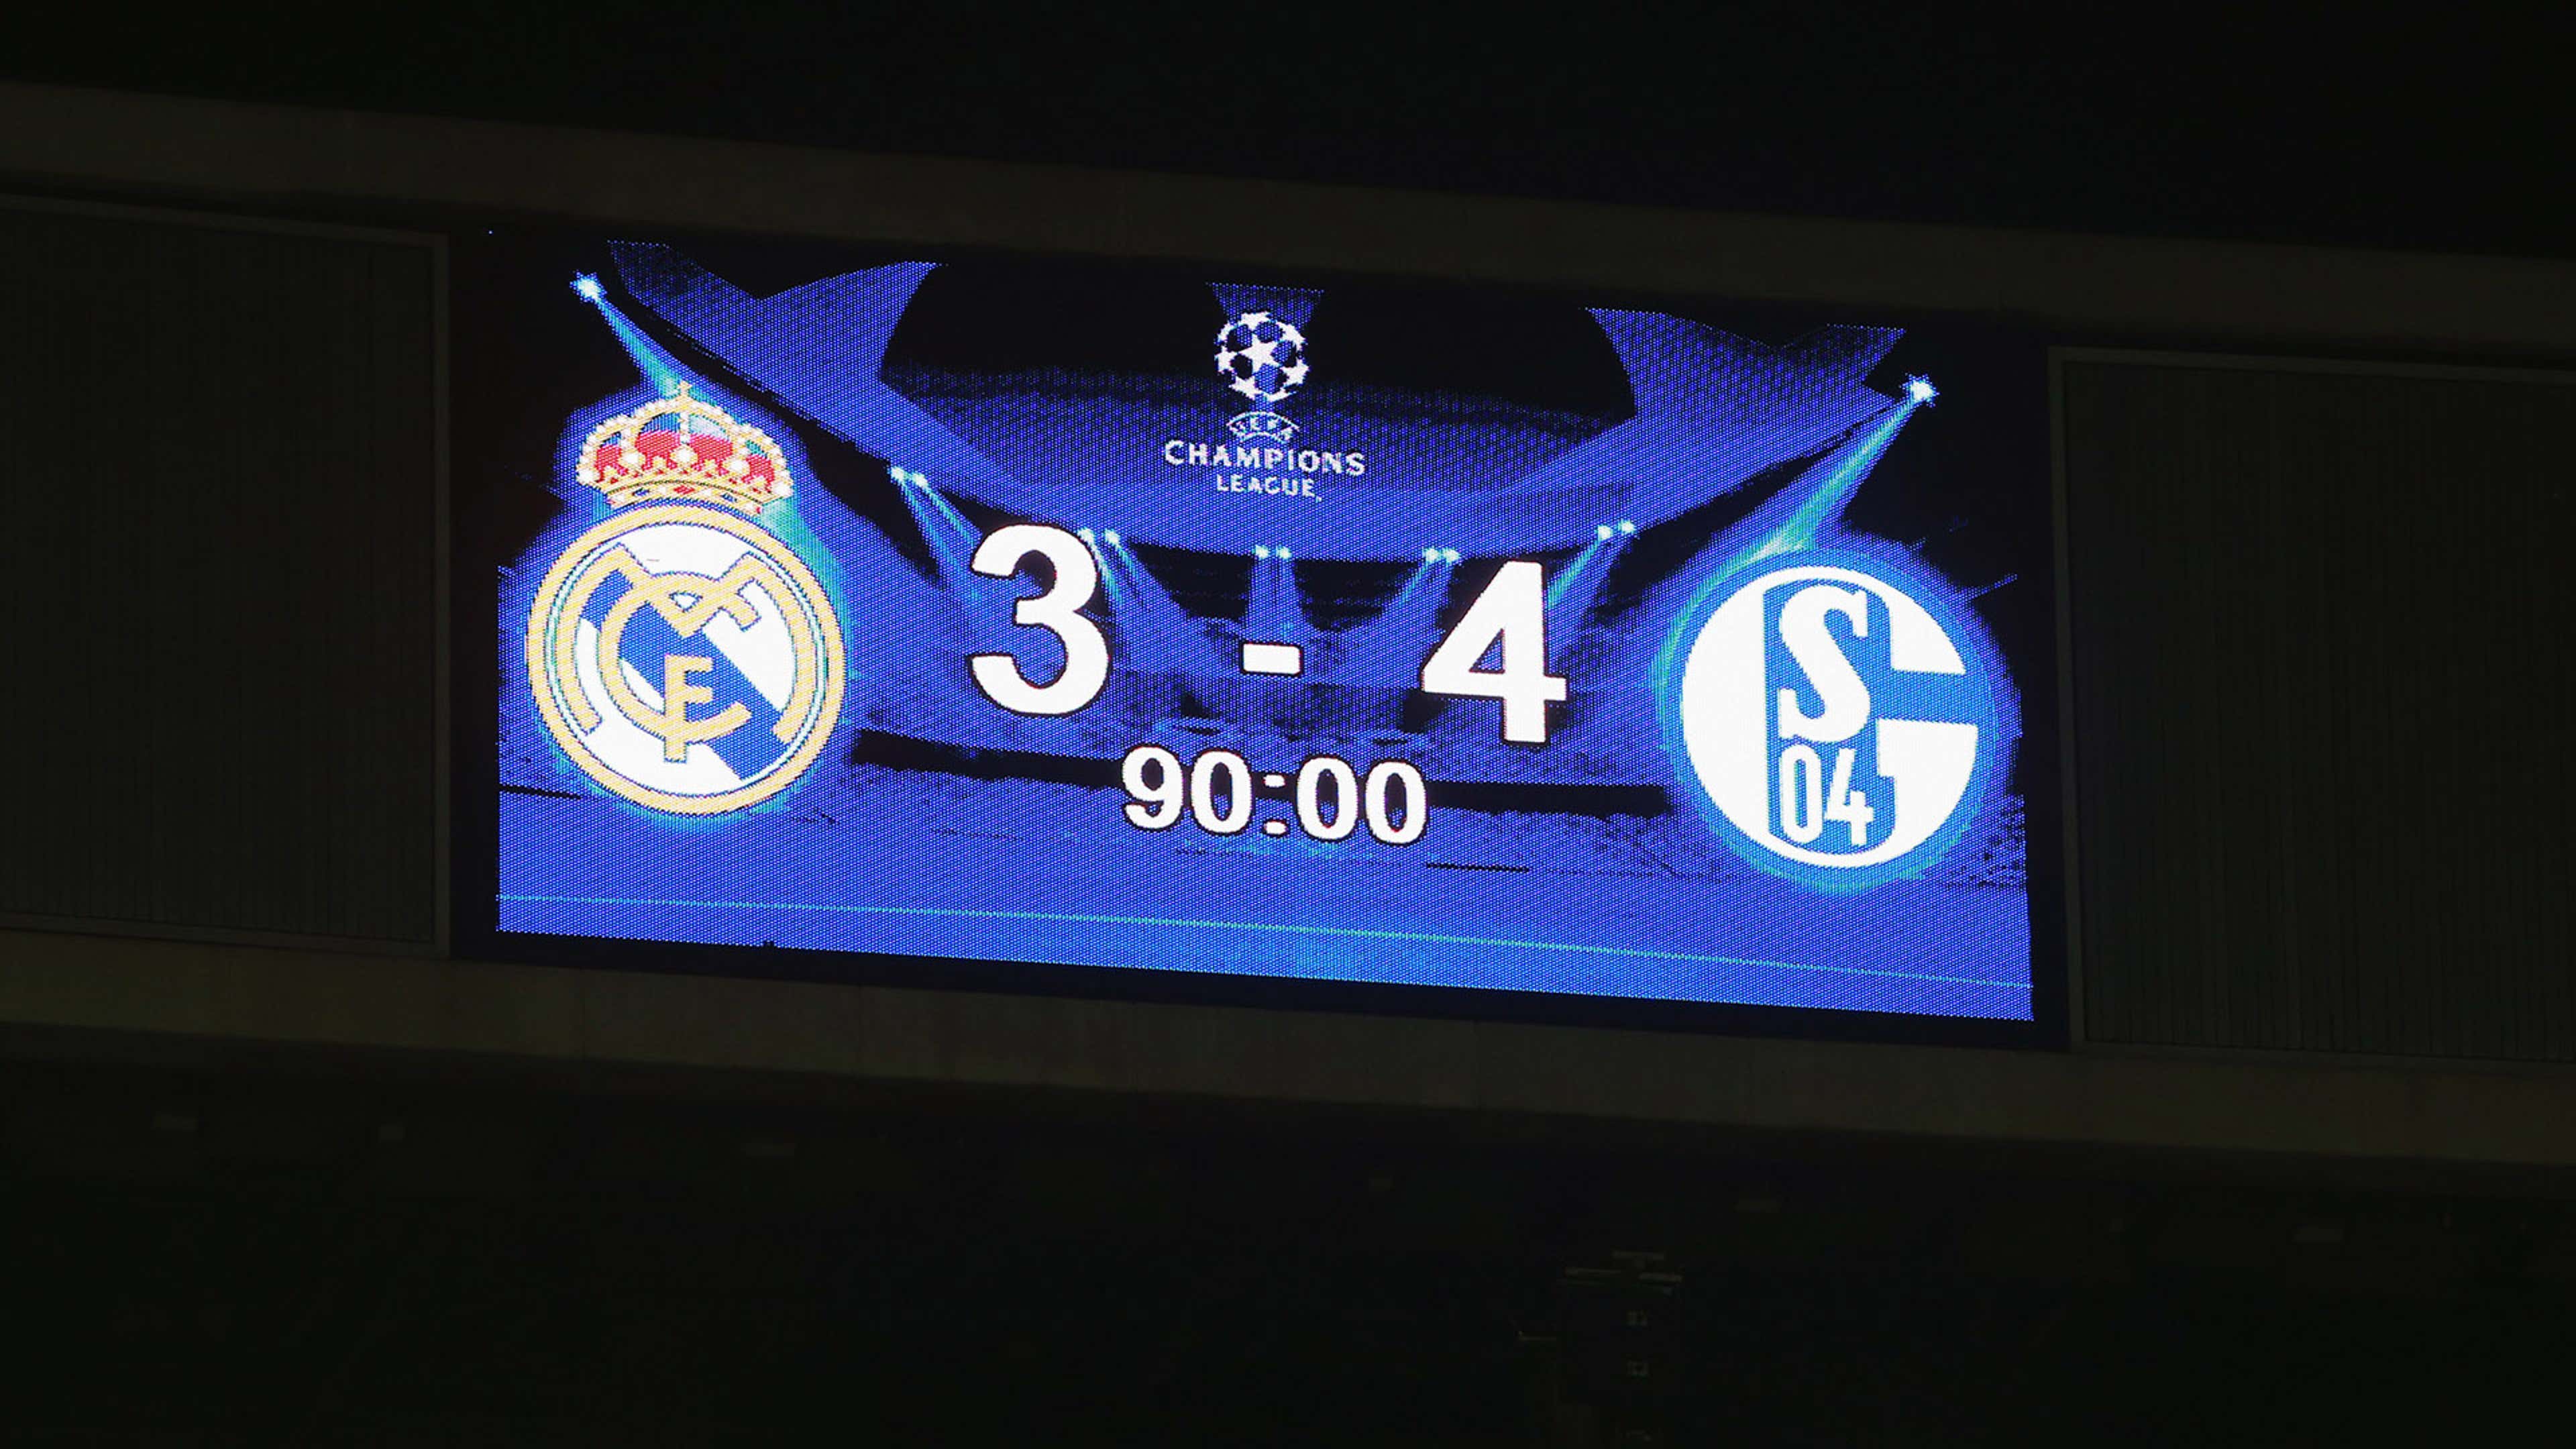 ¿Cuál es el partido más repetido en Champions League